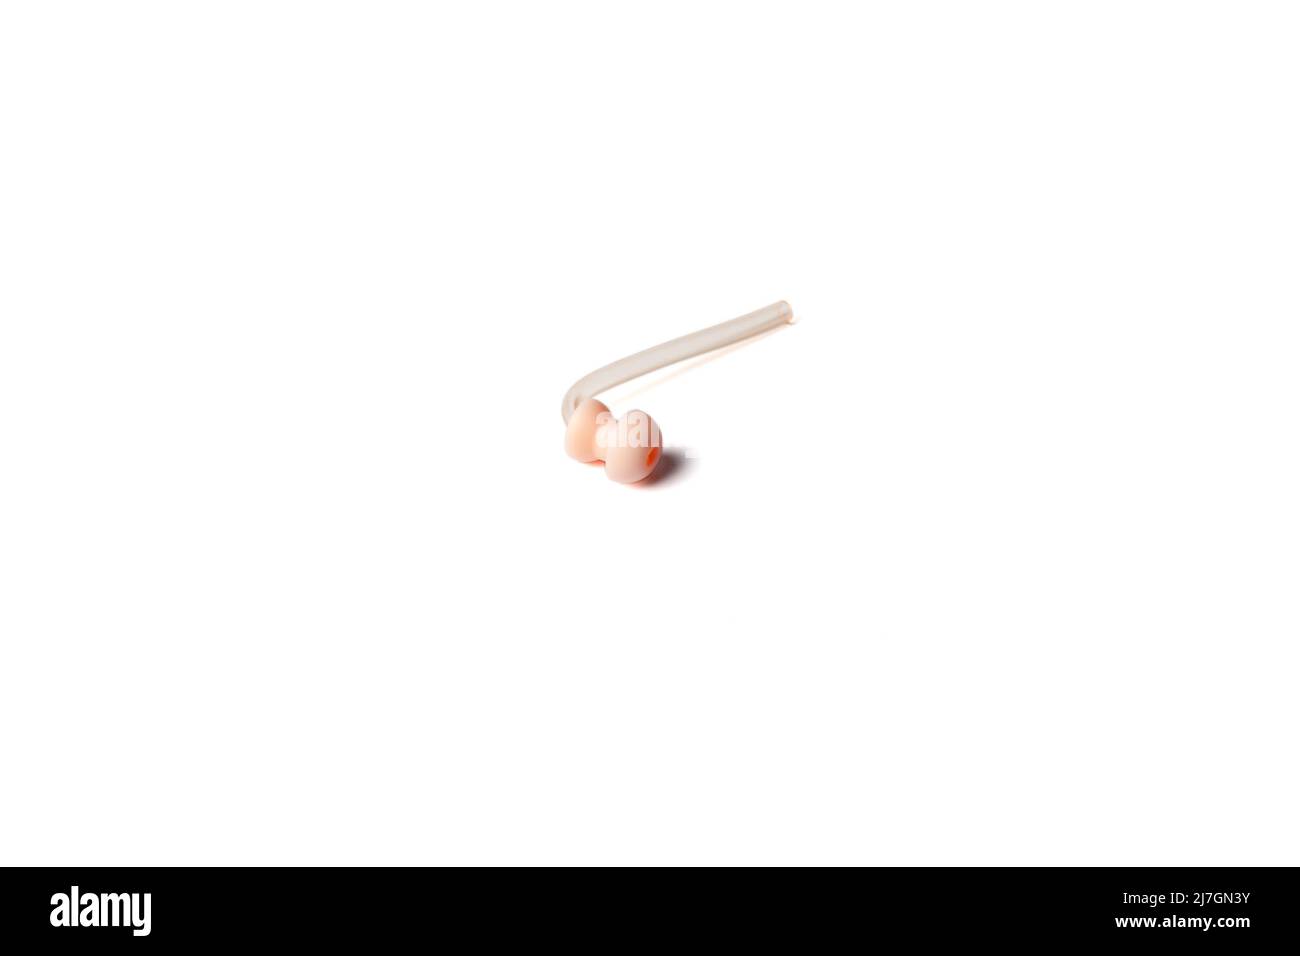 Hörgerätersatz-Ohrmuppel mit Silikonschlauch isoliert auf weißem Hintergrund. Zubehör für Hörgeräte. Stockfoto